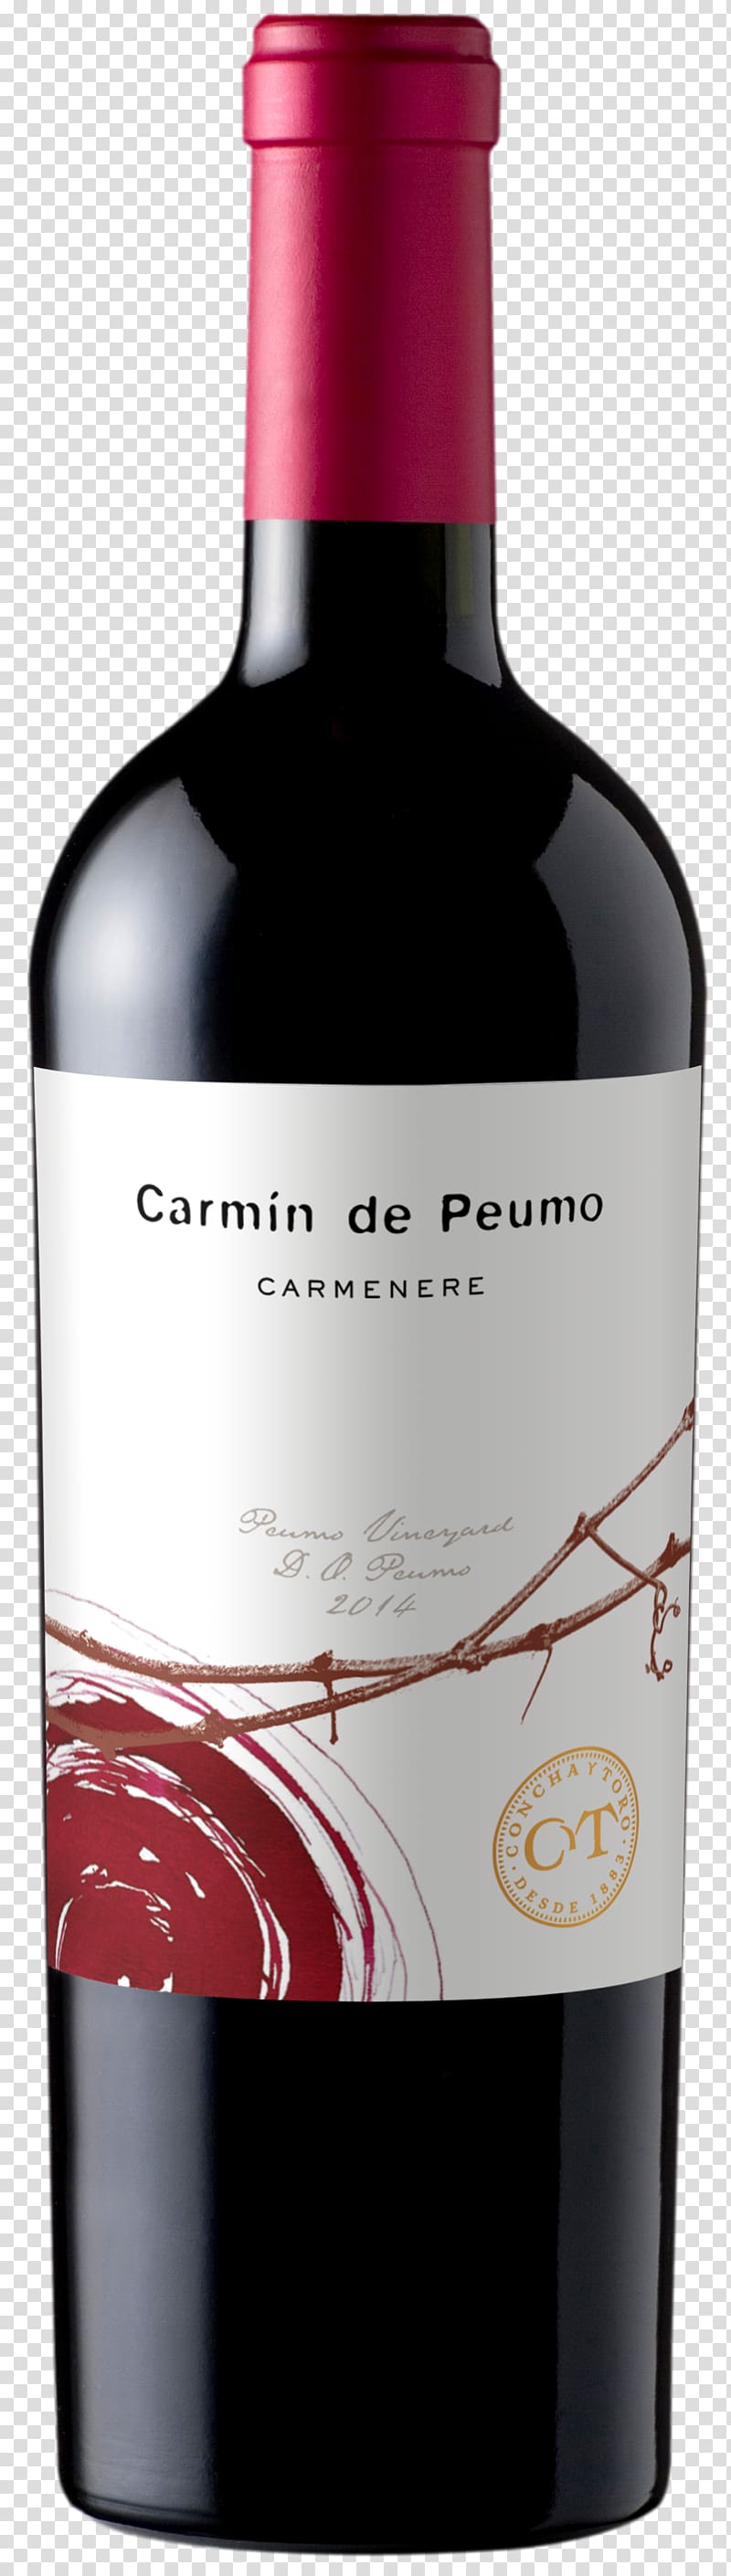 Carménère Red Wine Peumo Vina Concha Y Toro, wine transparent background PNG clipart